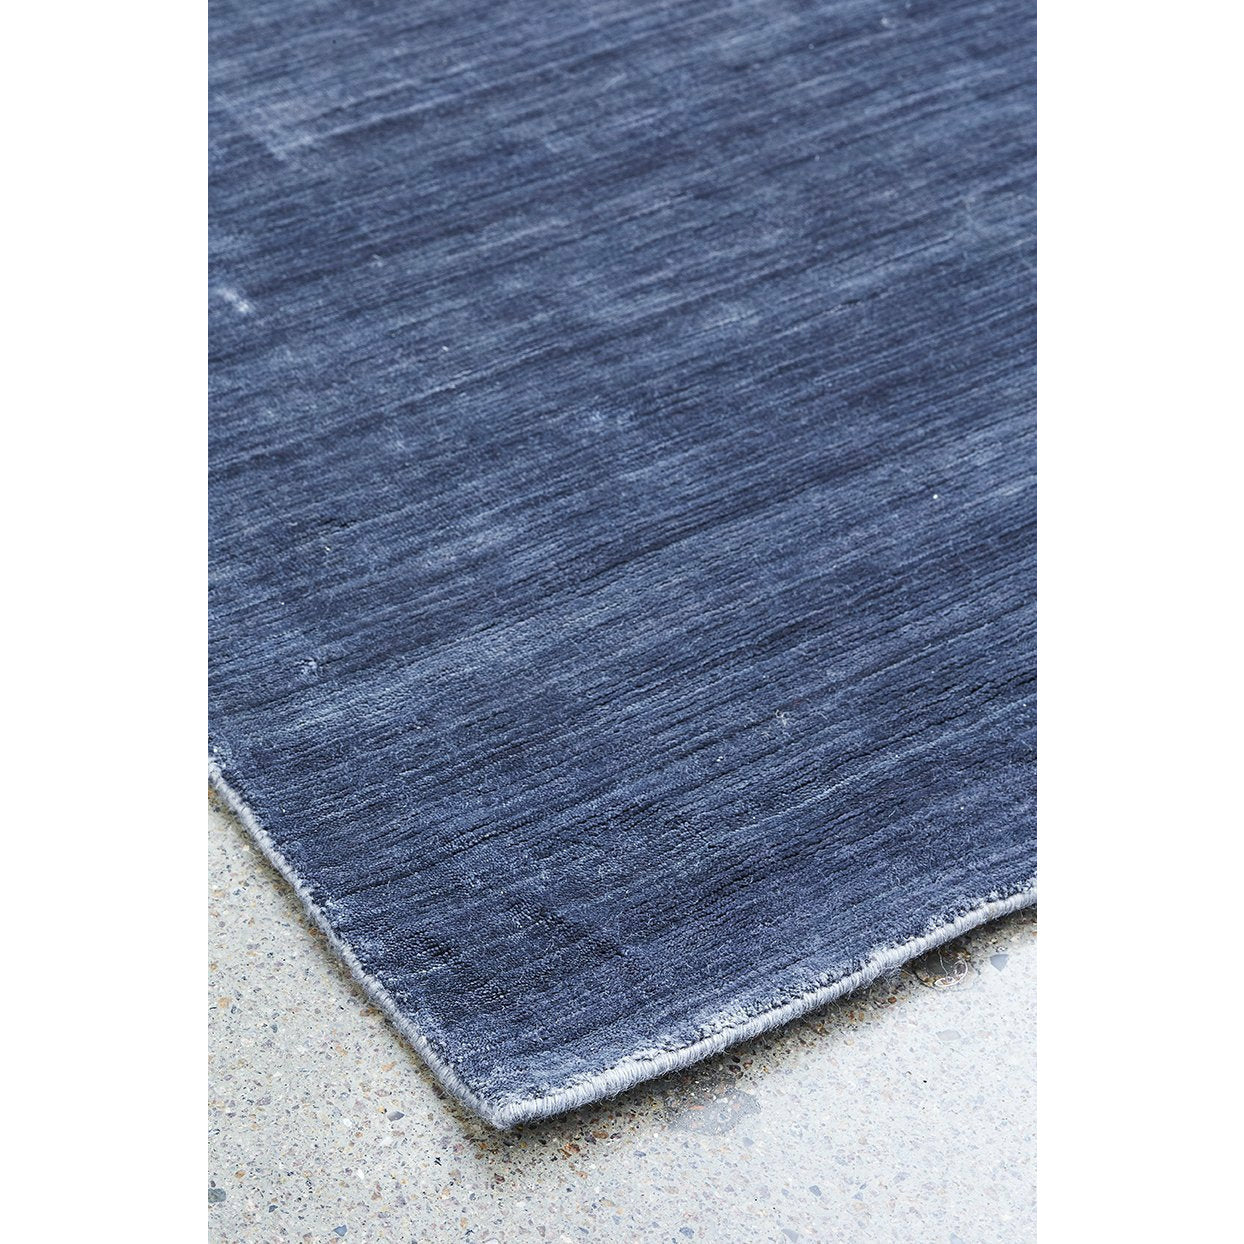 Massimo Bamboe tapijt staal zwart, 250x300 cm